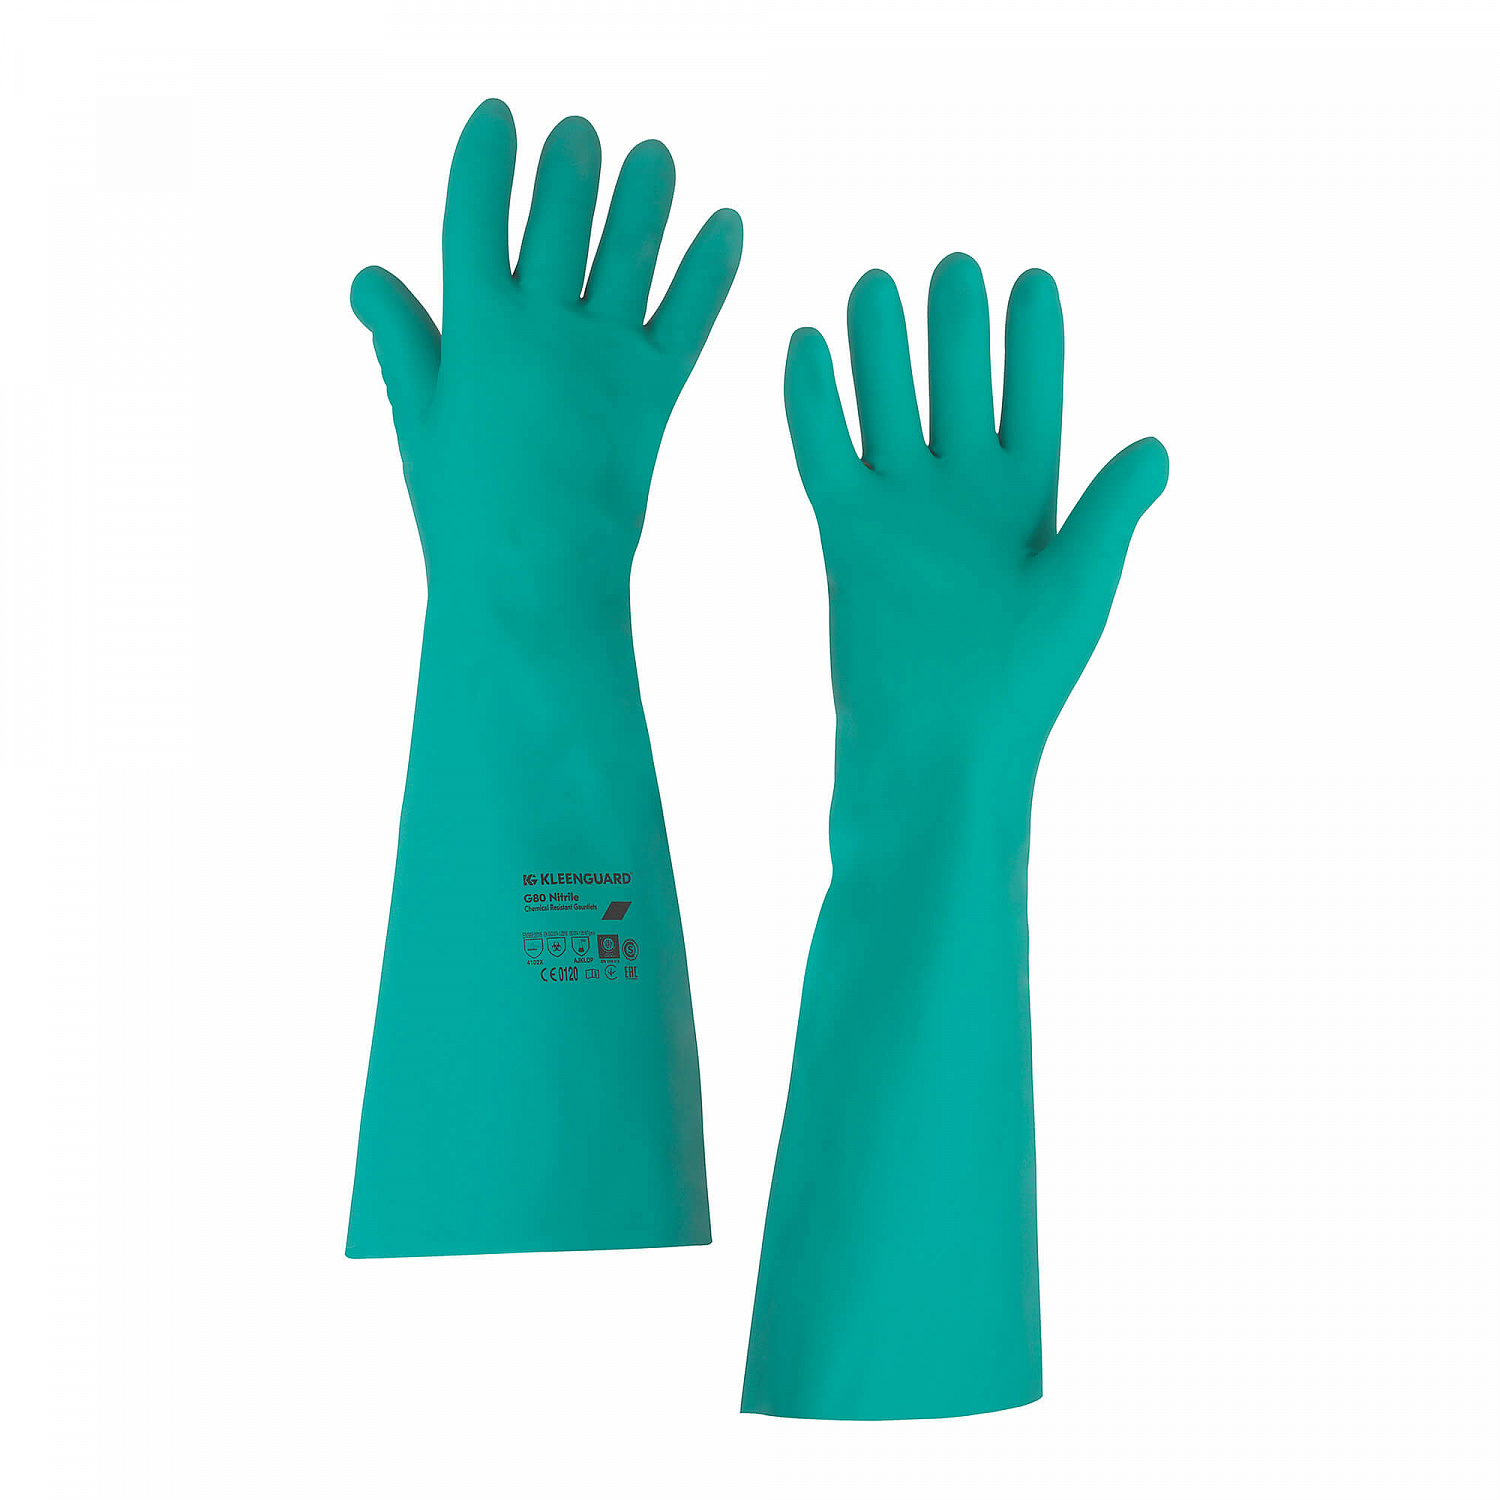 Перчатки-нарукавники Jackson Safety хим. стойкие G80 нитрил, разм. 11  (1 упк.-12 пар)